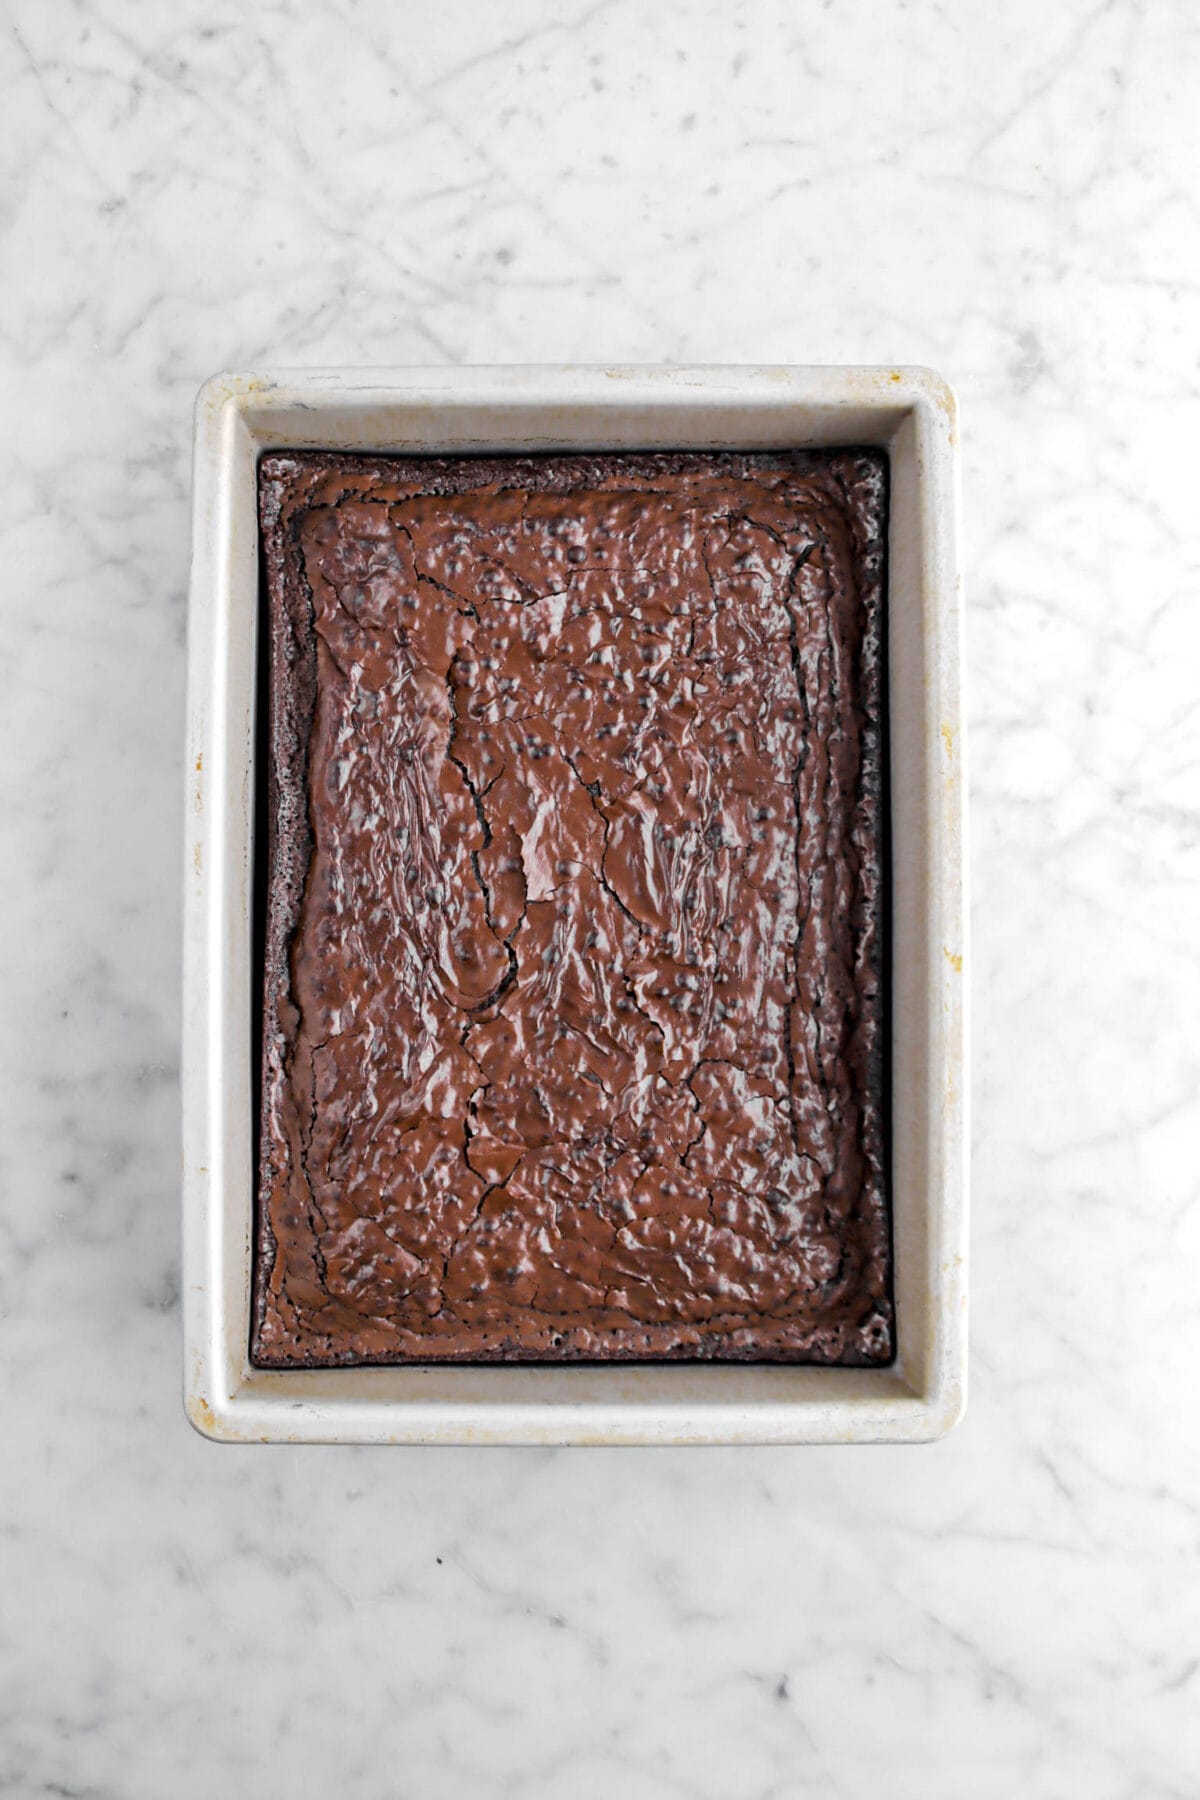 baked brownie in sheet pan.